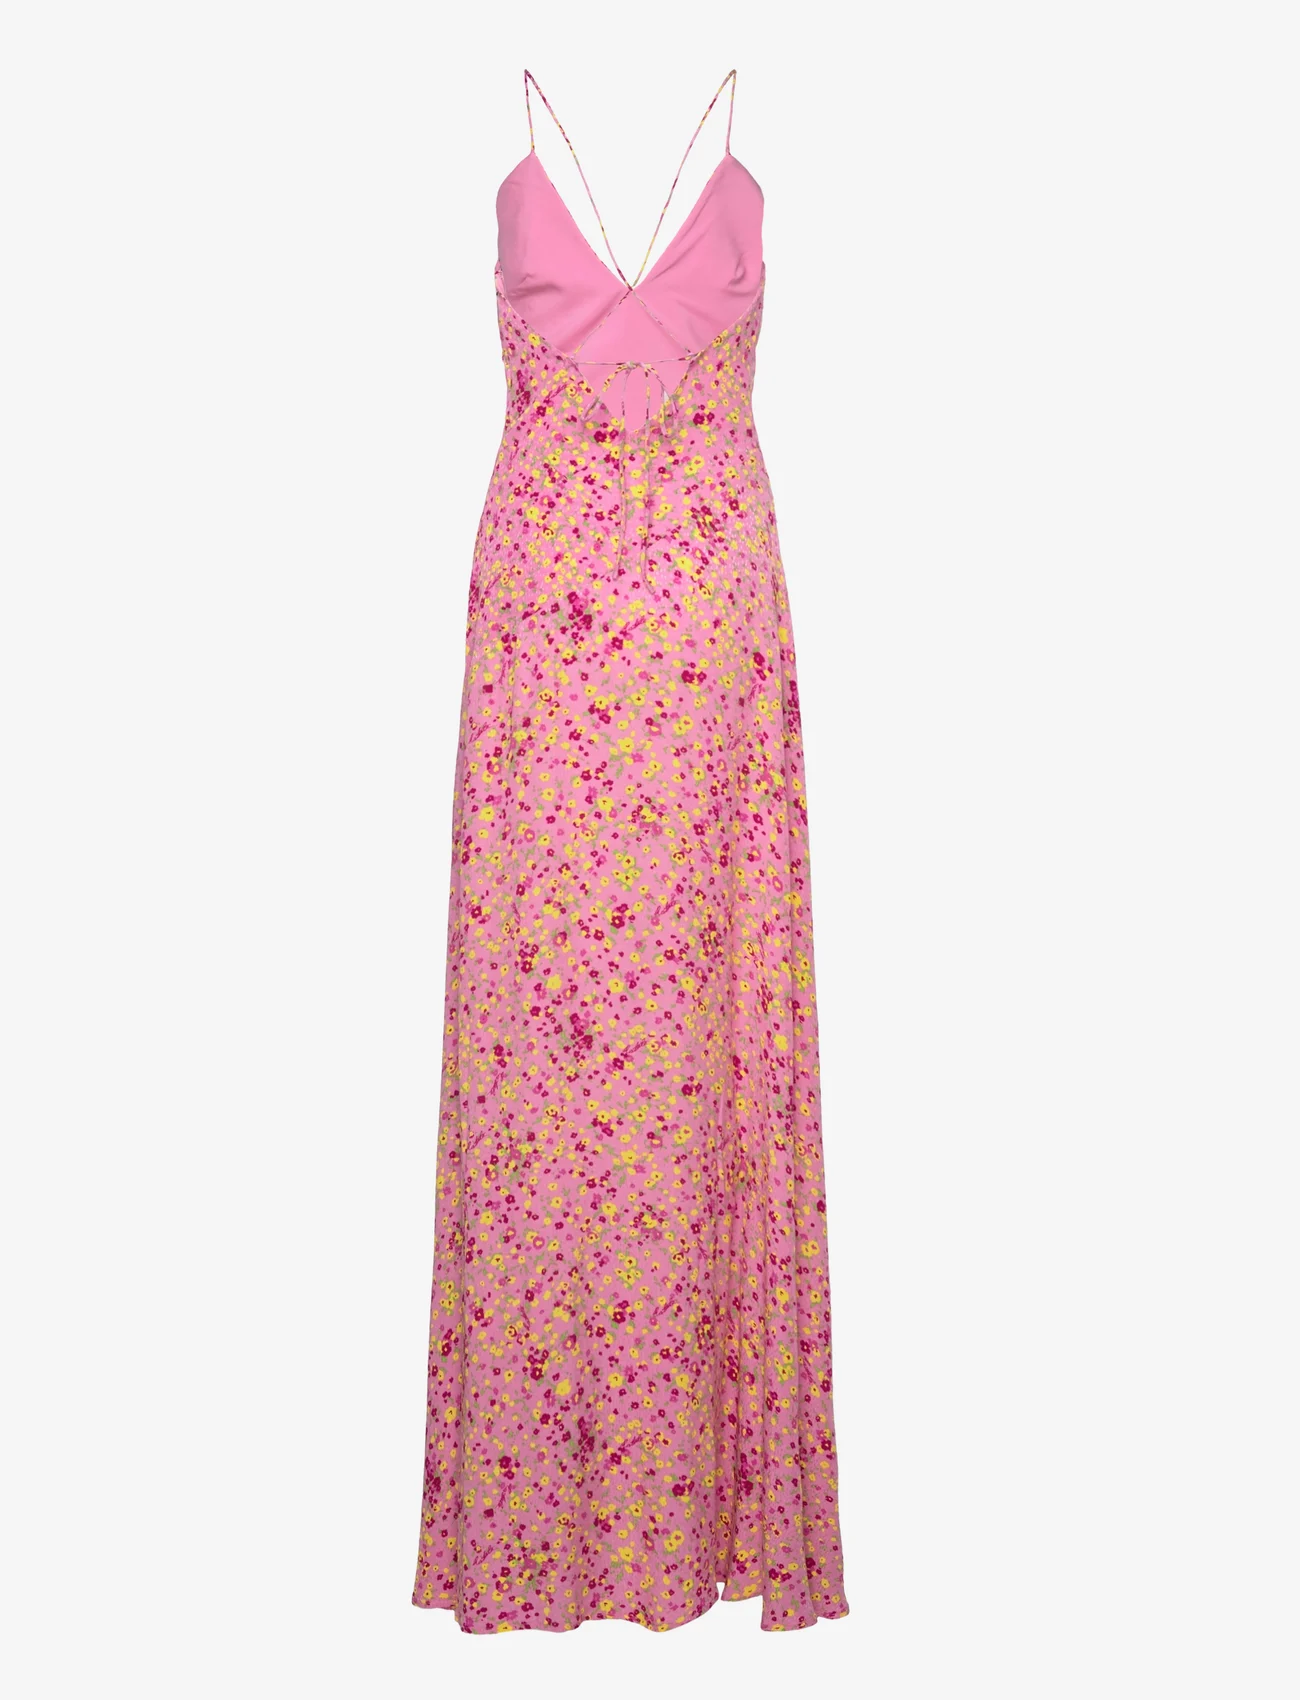 ROTATE Birger Christensen - Jacquard Maxi Slip Dress - slipklänningar - fuchsia pink comb. - 1